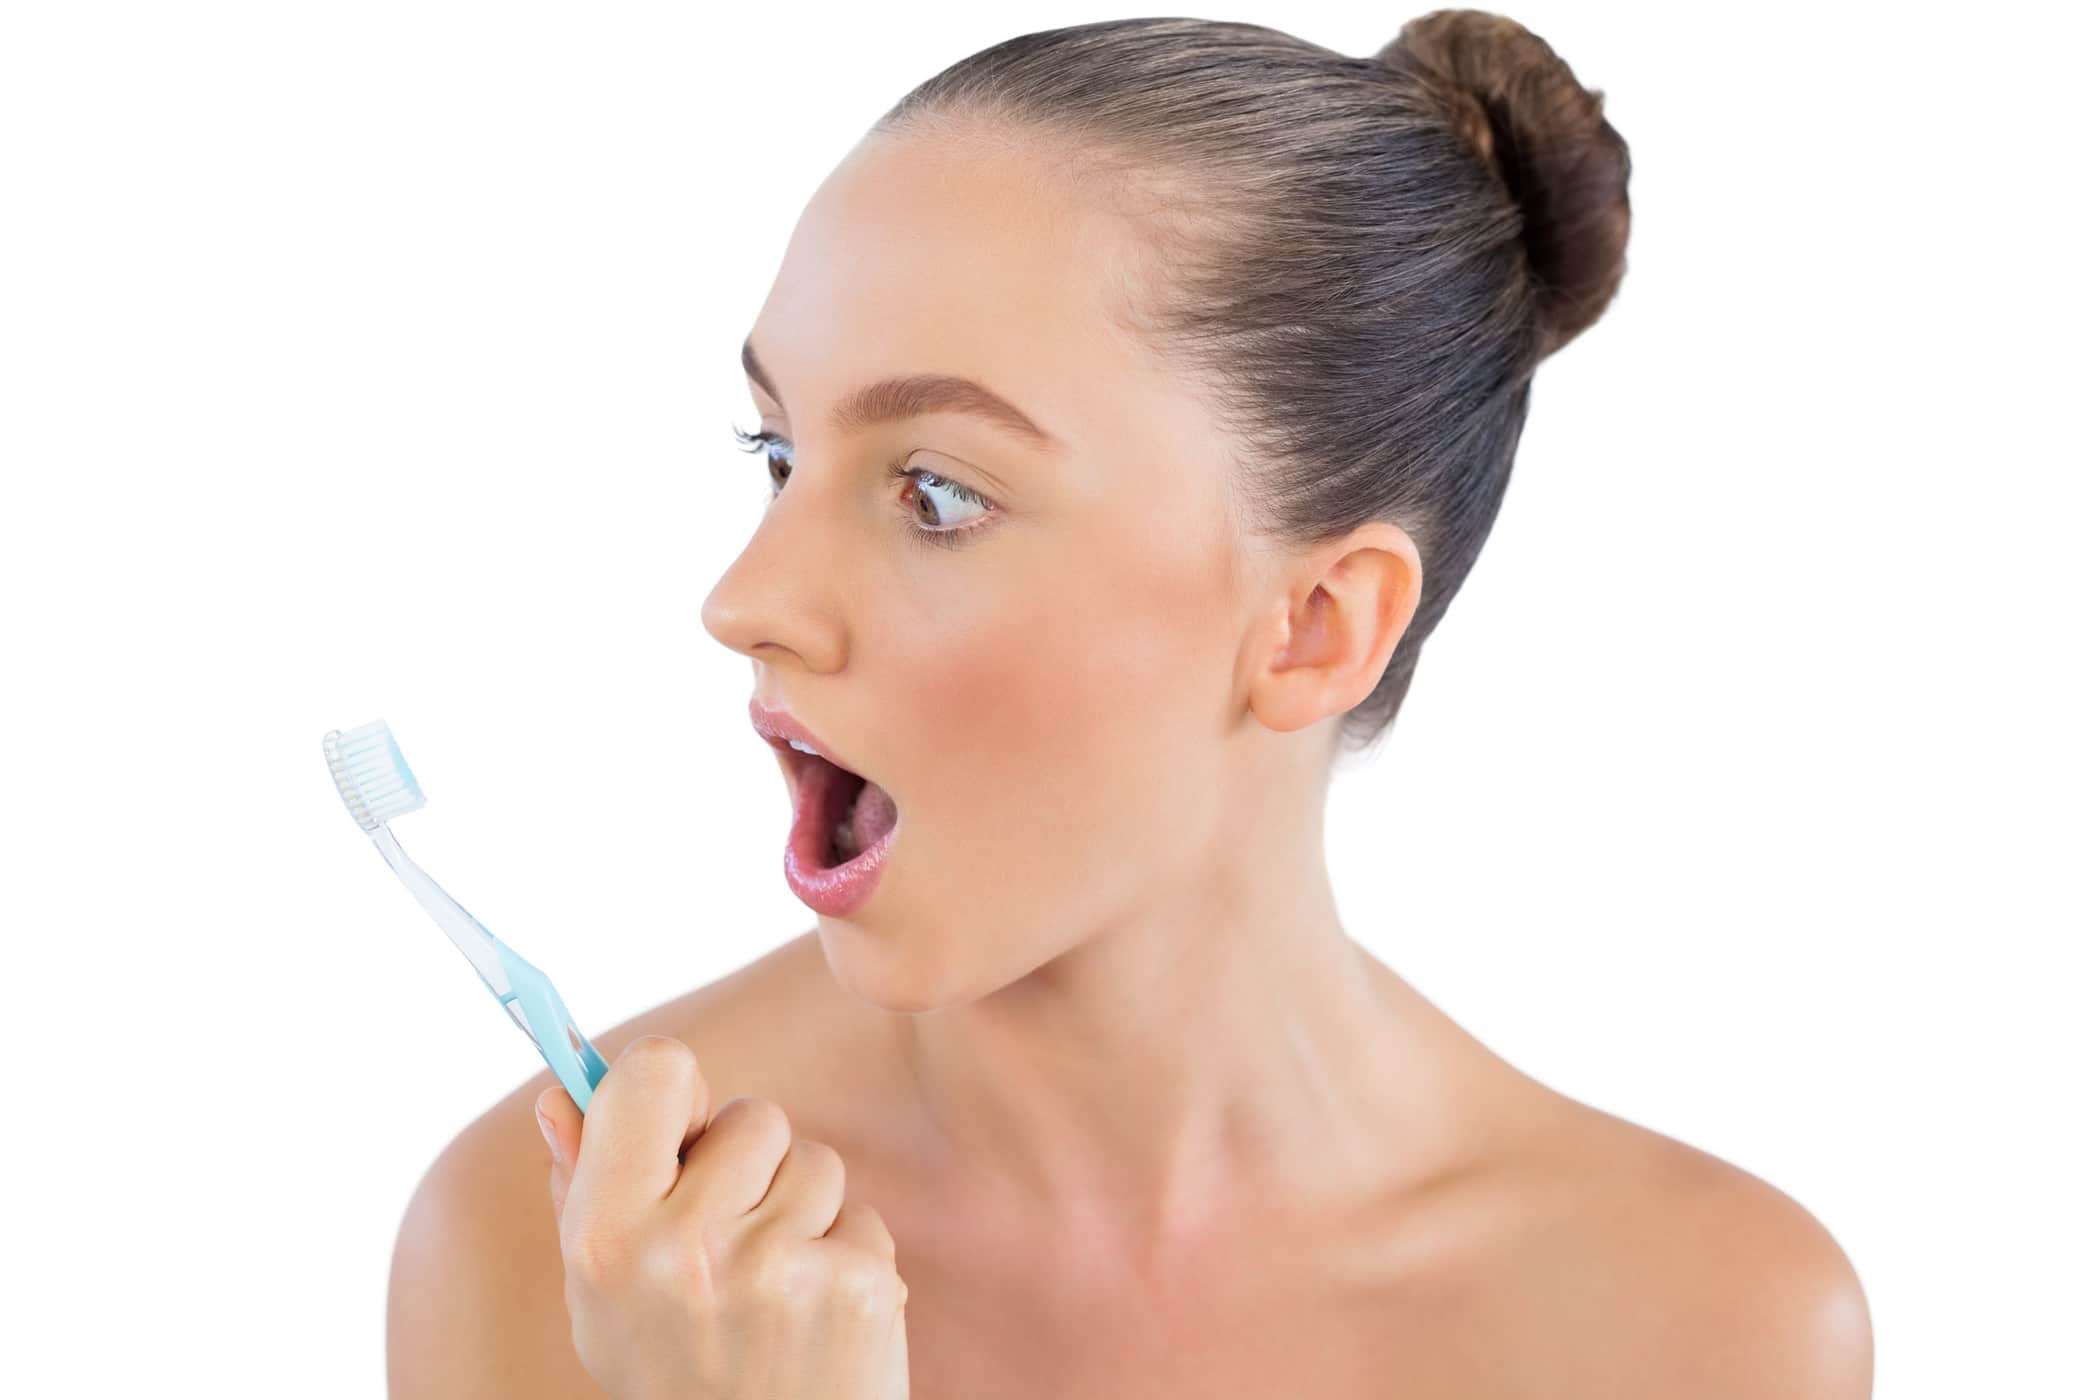 لماذا يشعر بعض الناس بالغثيان عند تفريش الأسنان؟